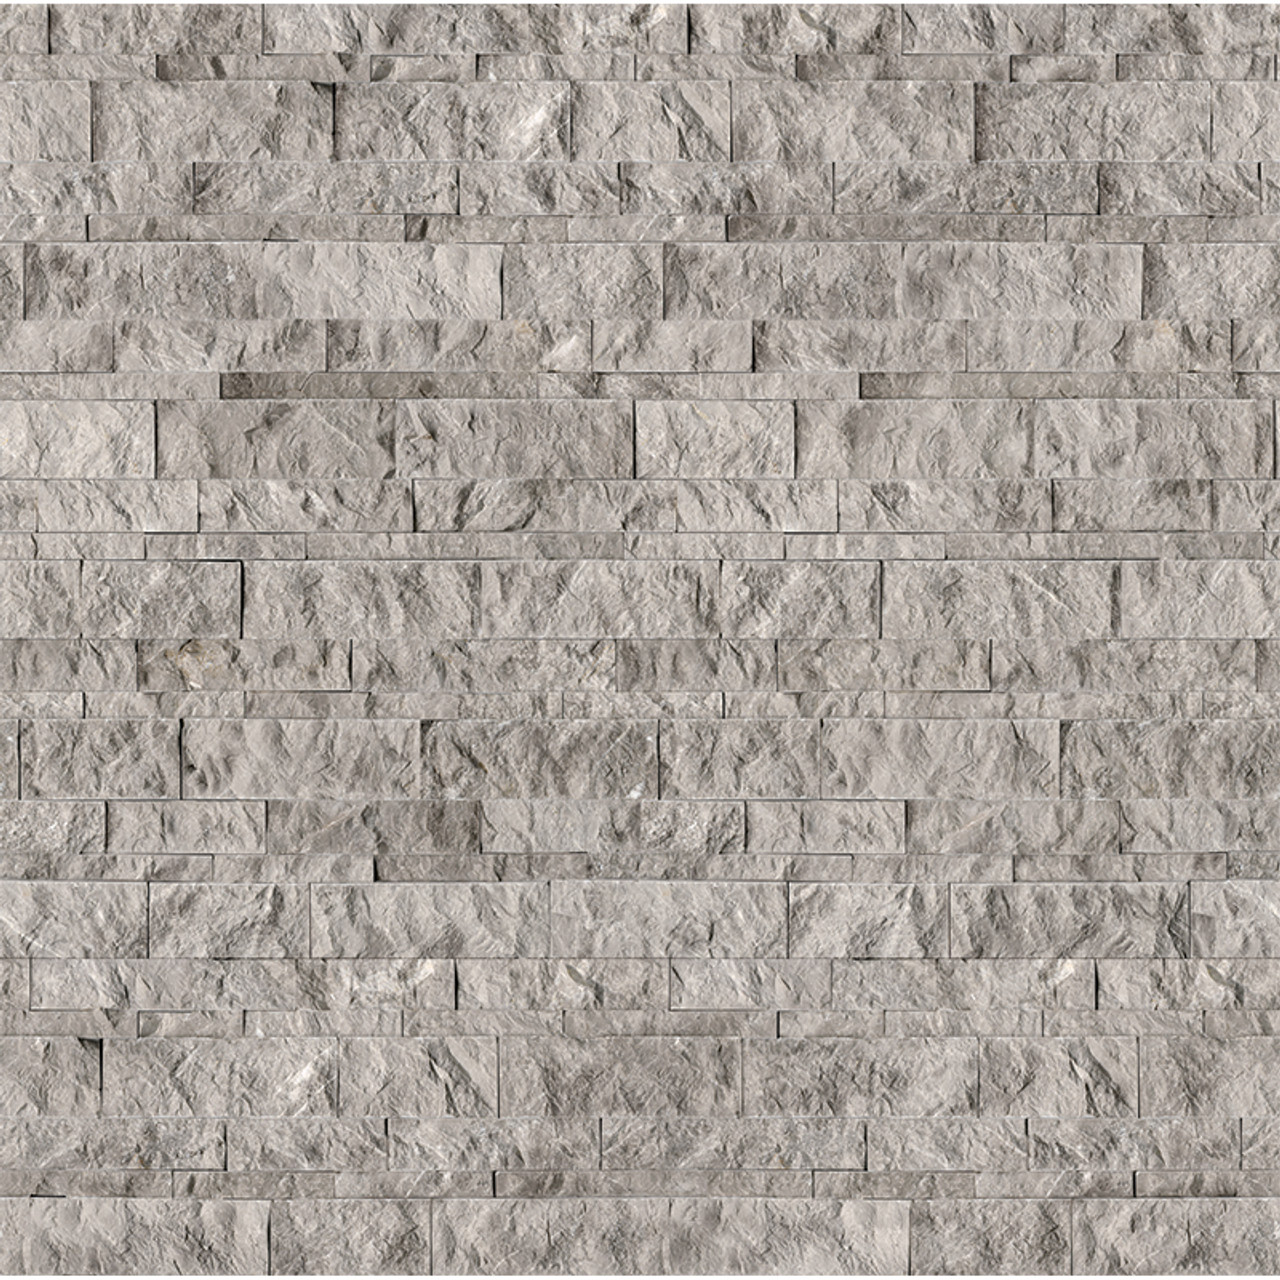 Ledger Stone Carbon Panel 6x24 - Tiles Direct Store